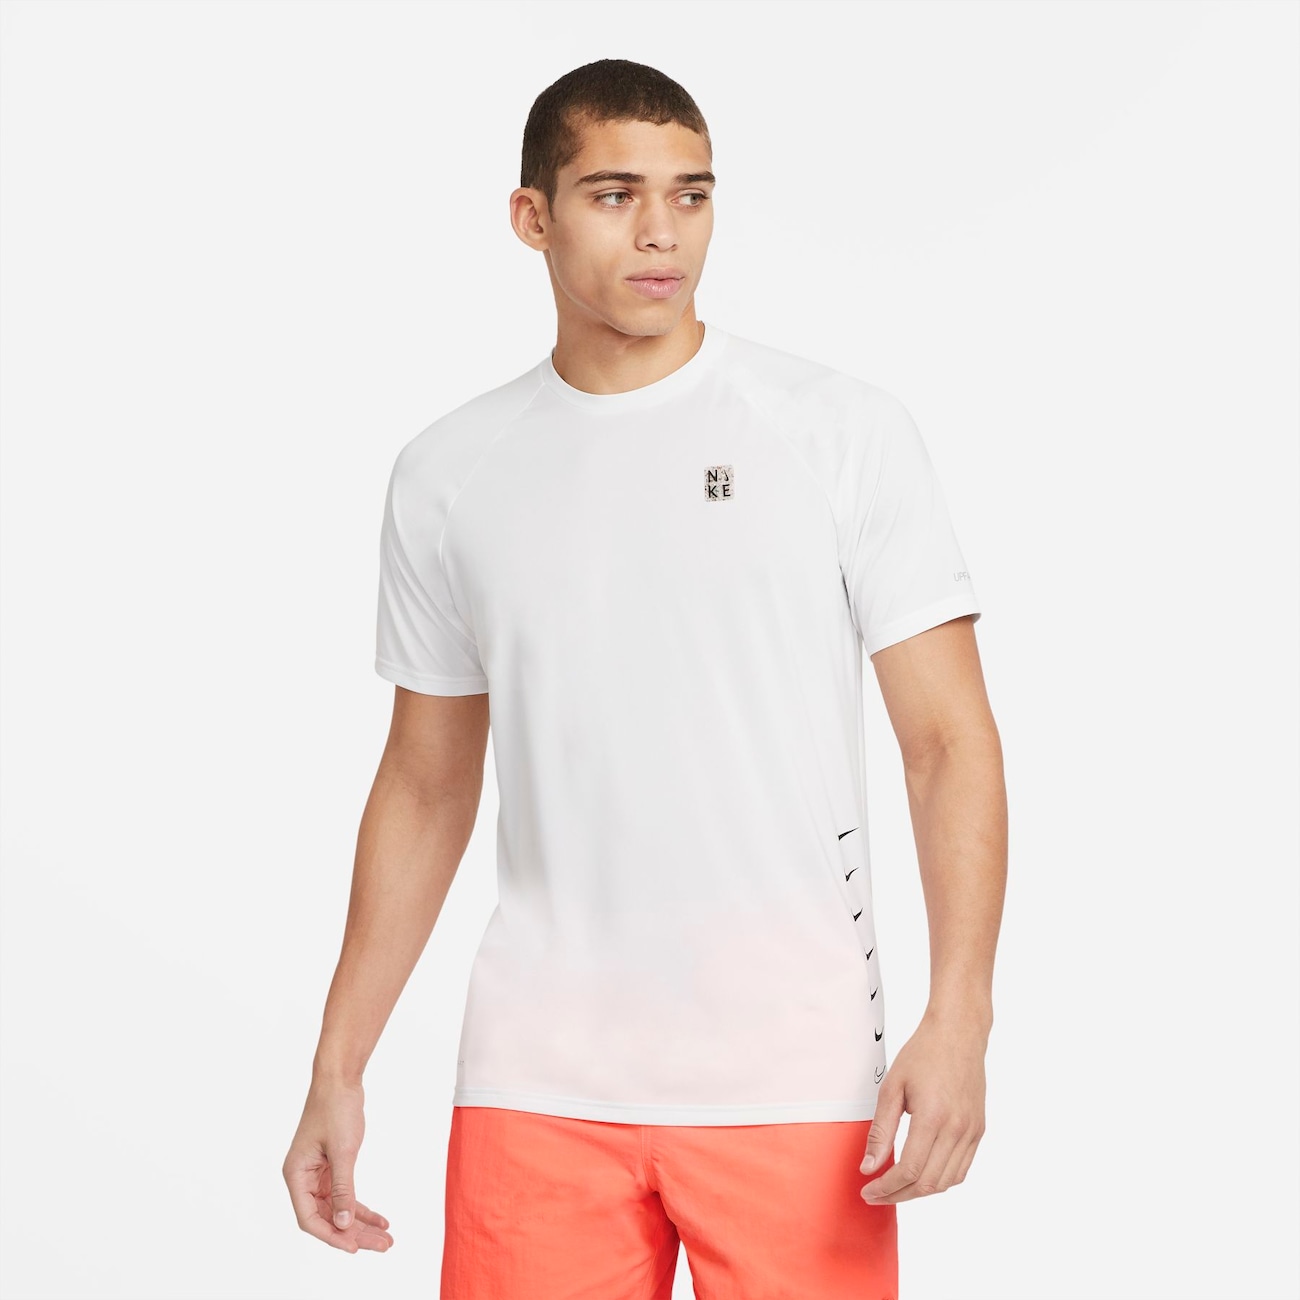 Camiseta Nike Hydroguard MultiSwoosh UV Masculina - Foto 1